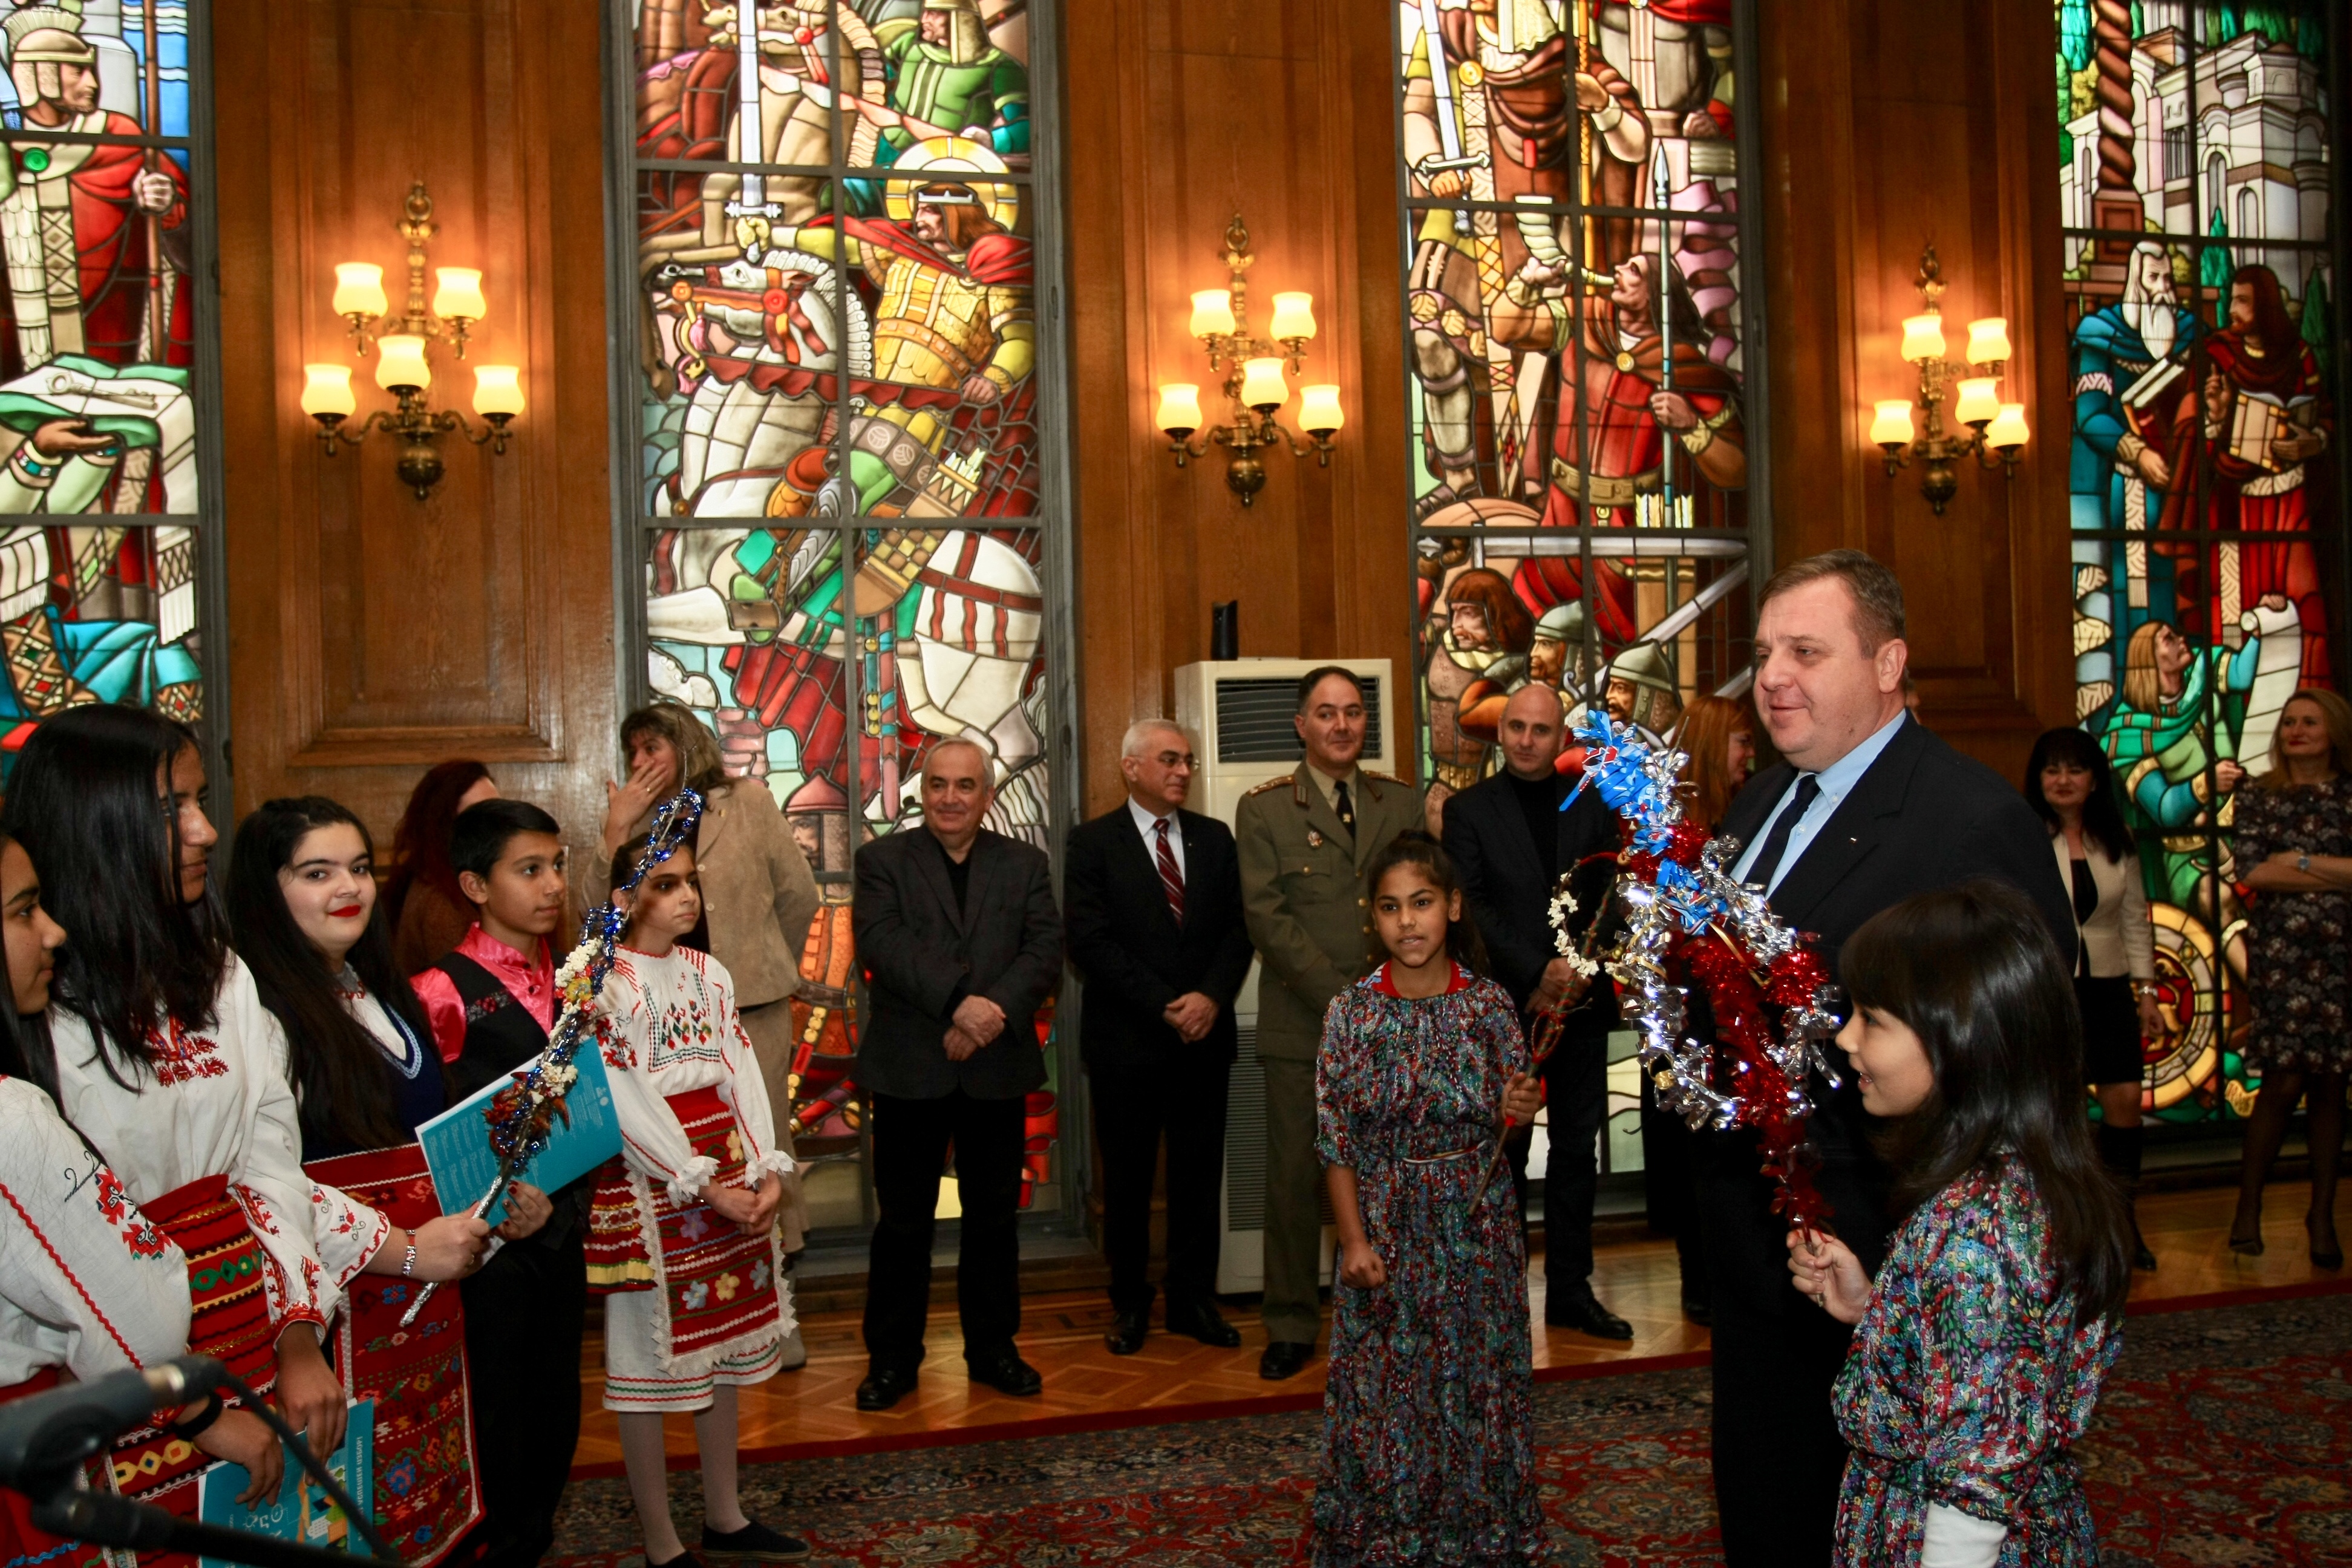 Децата, които посетиха министър Каракачанов, бяха от Средно училище "Кирил и Методий“ в гр. Златарица